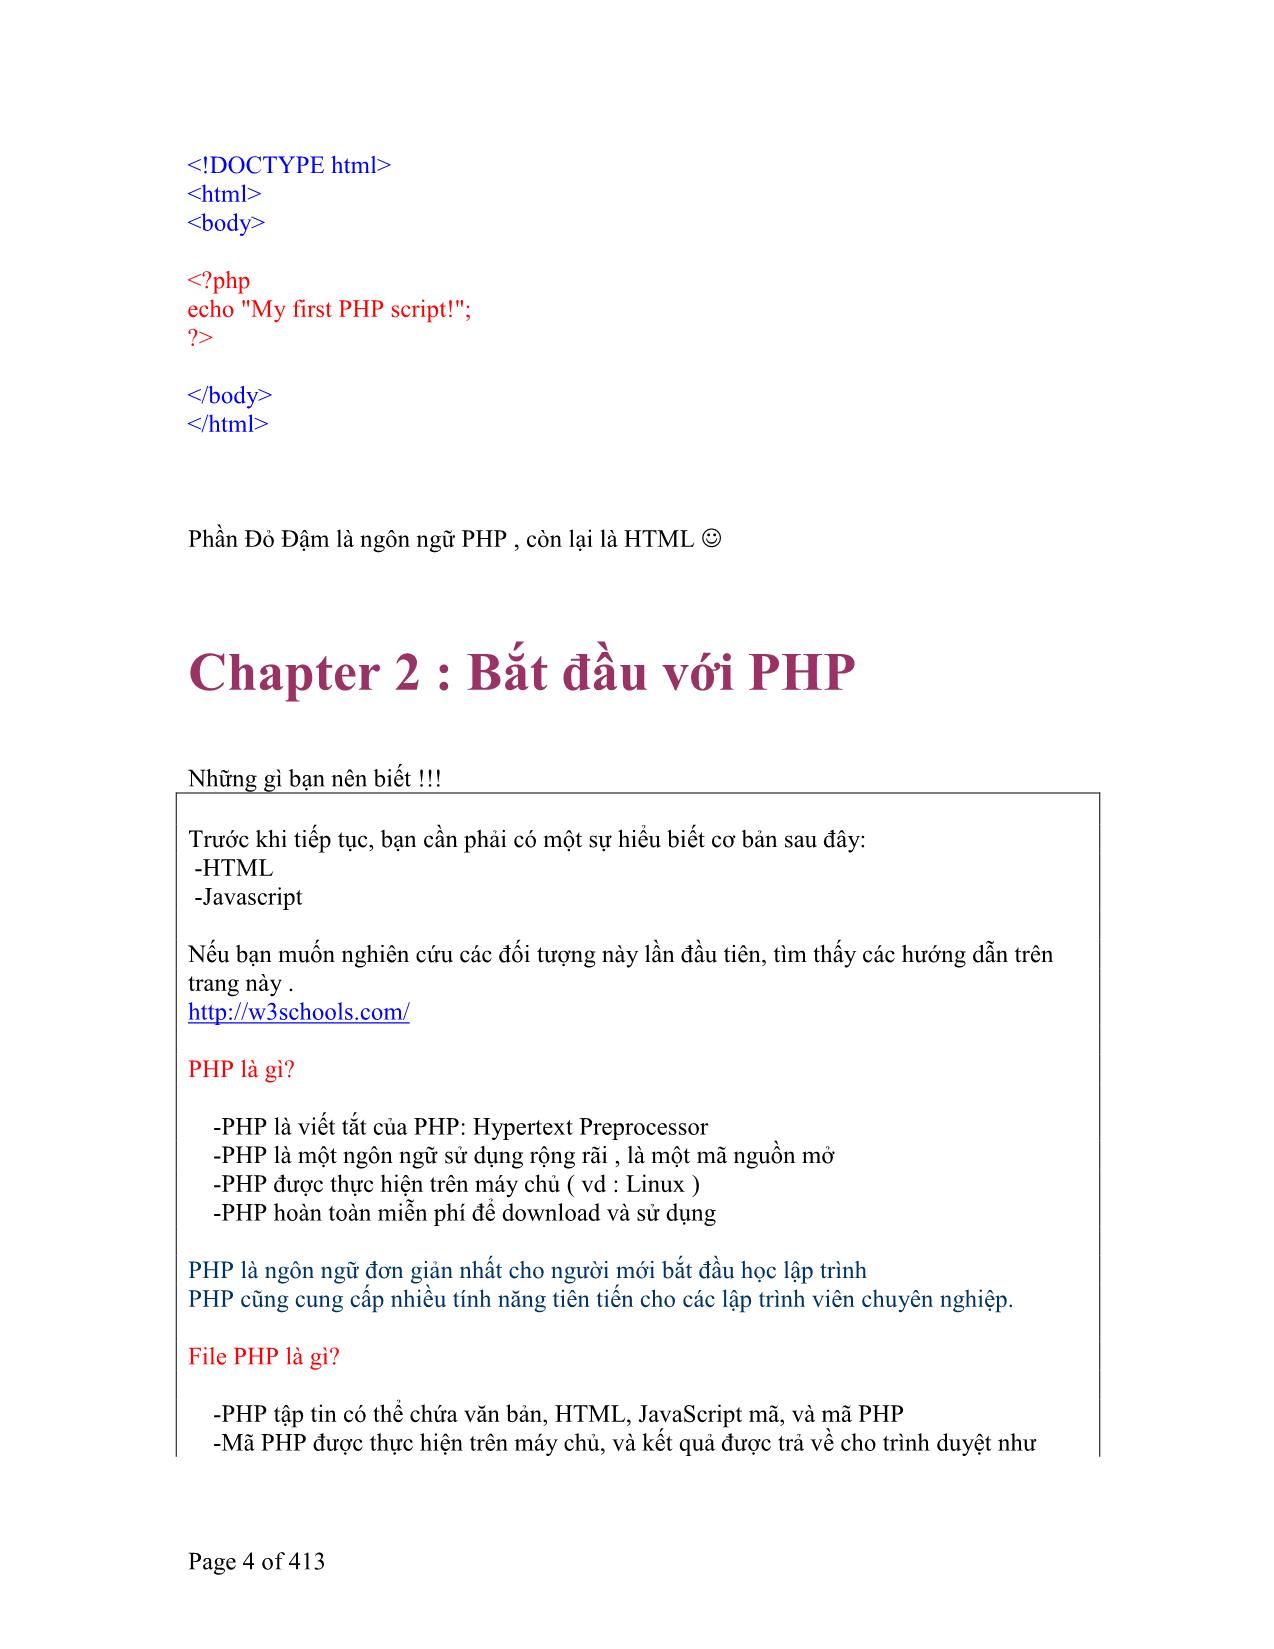 Tổng hợp về PHP trang 4